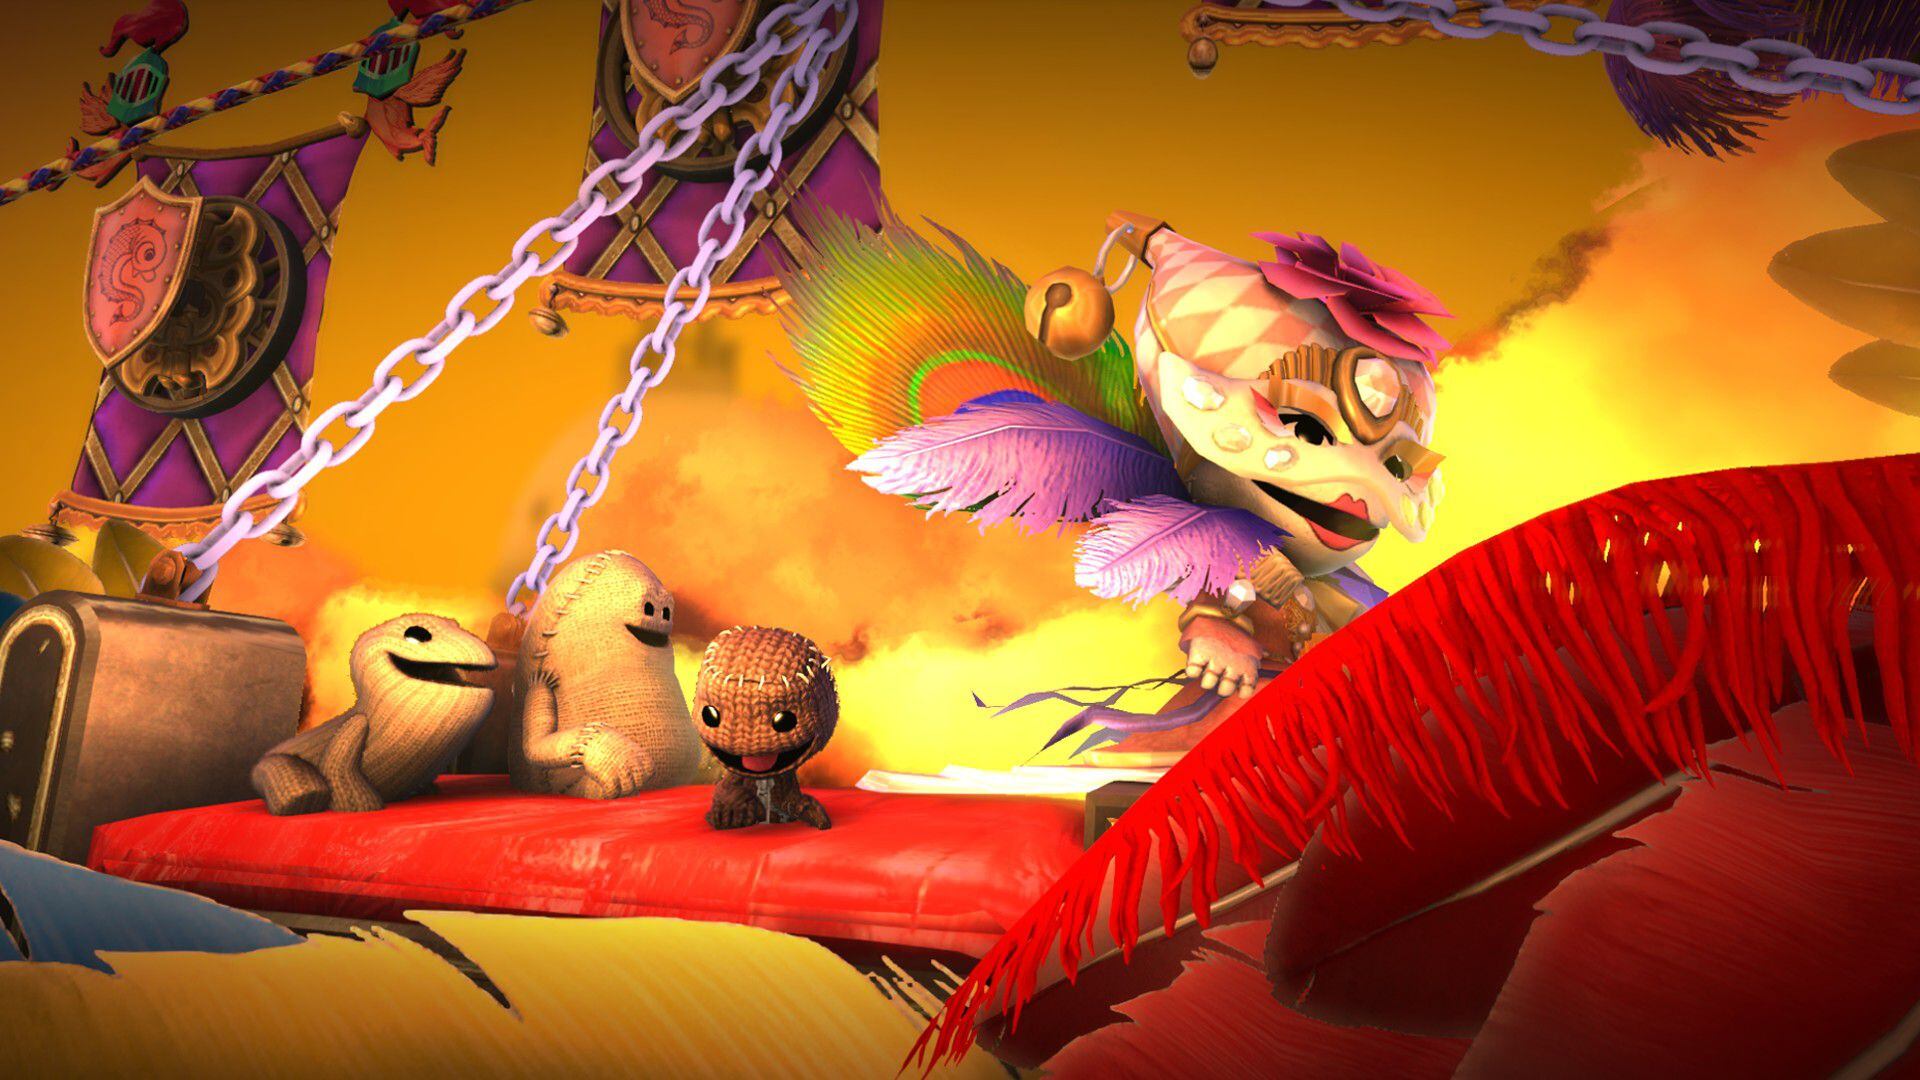 LittleBigPlanet 3, de Sumo Digital.